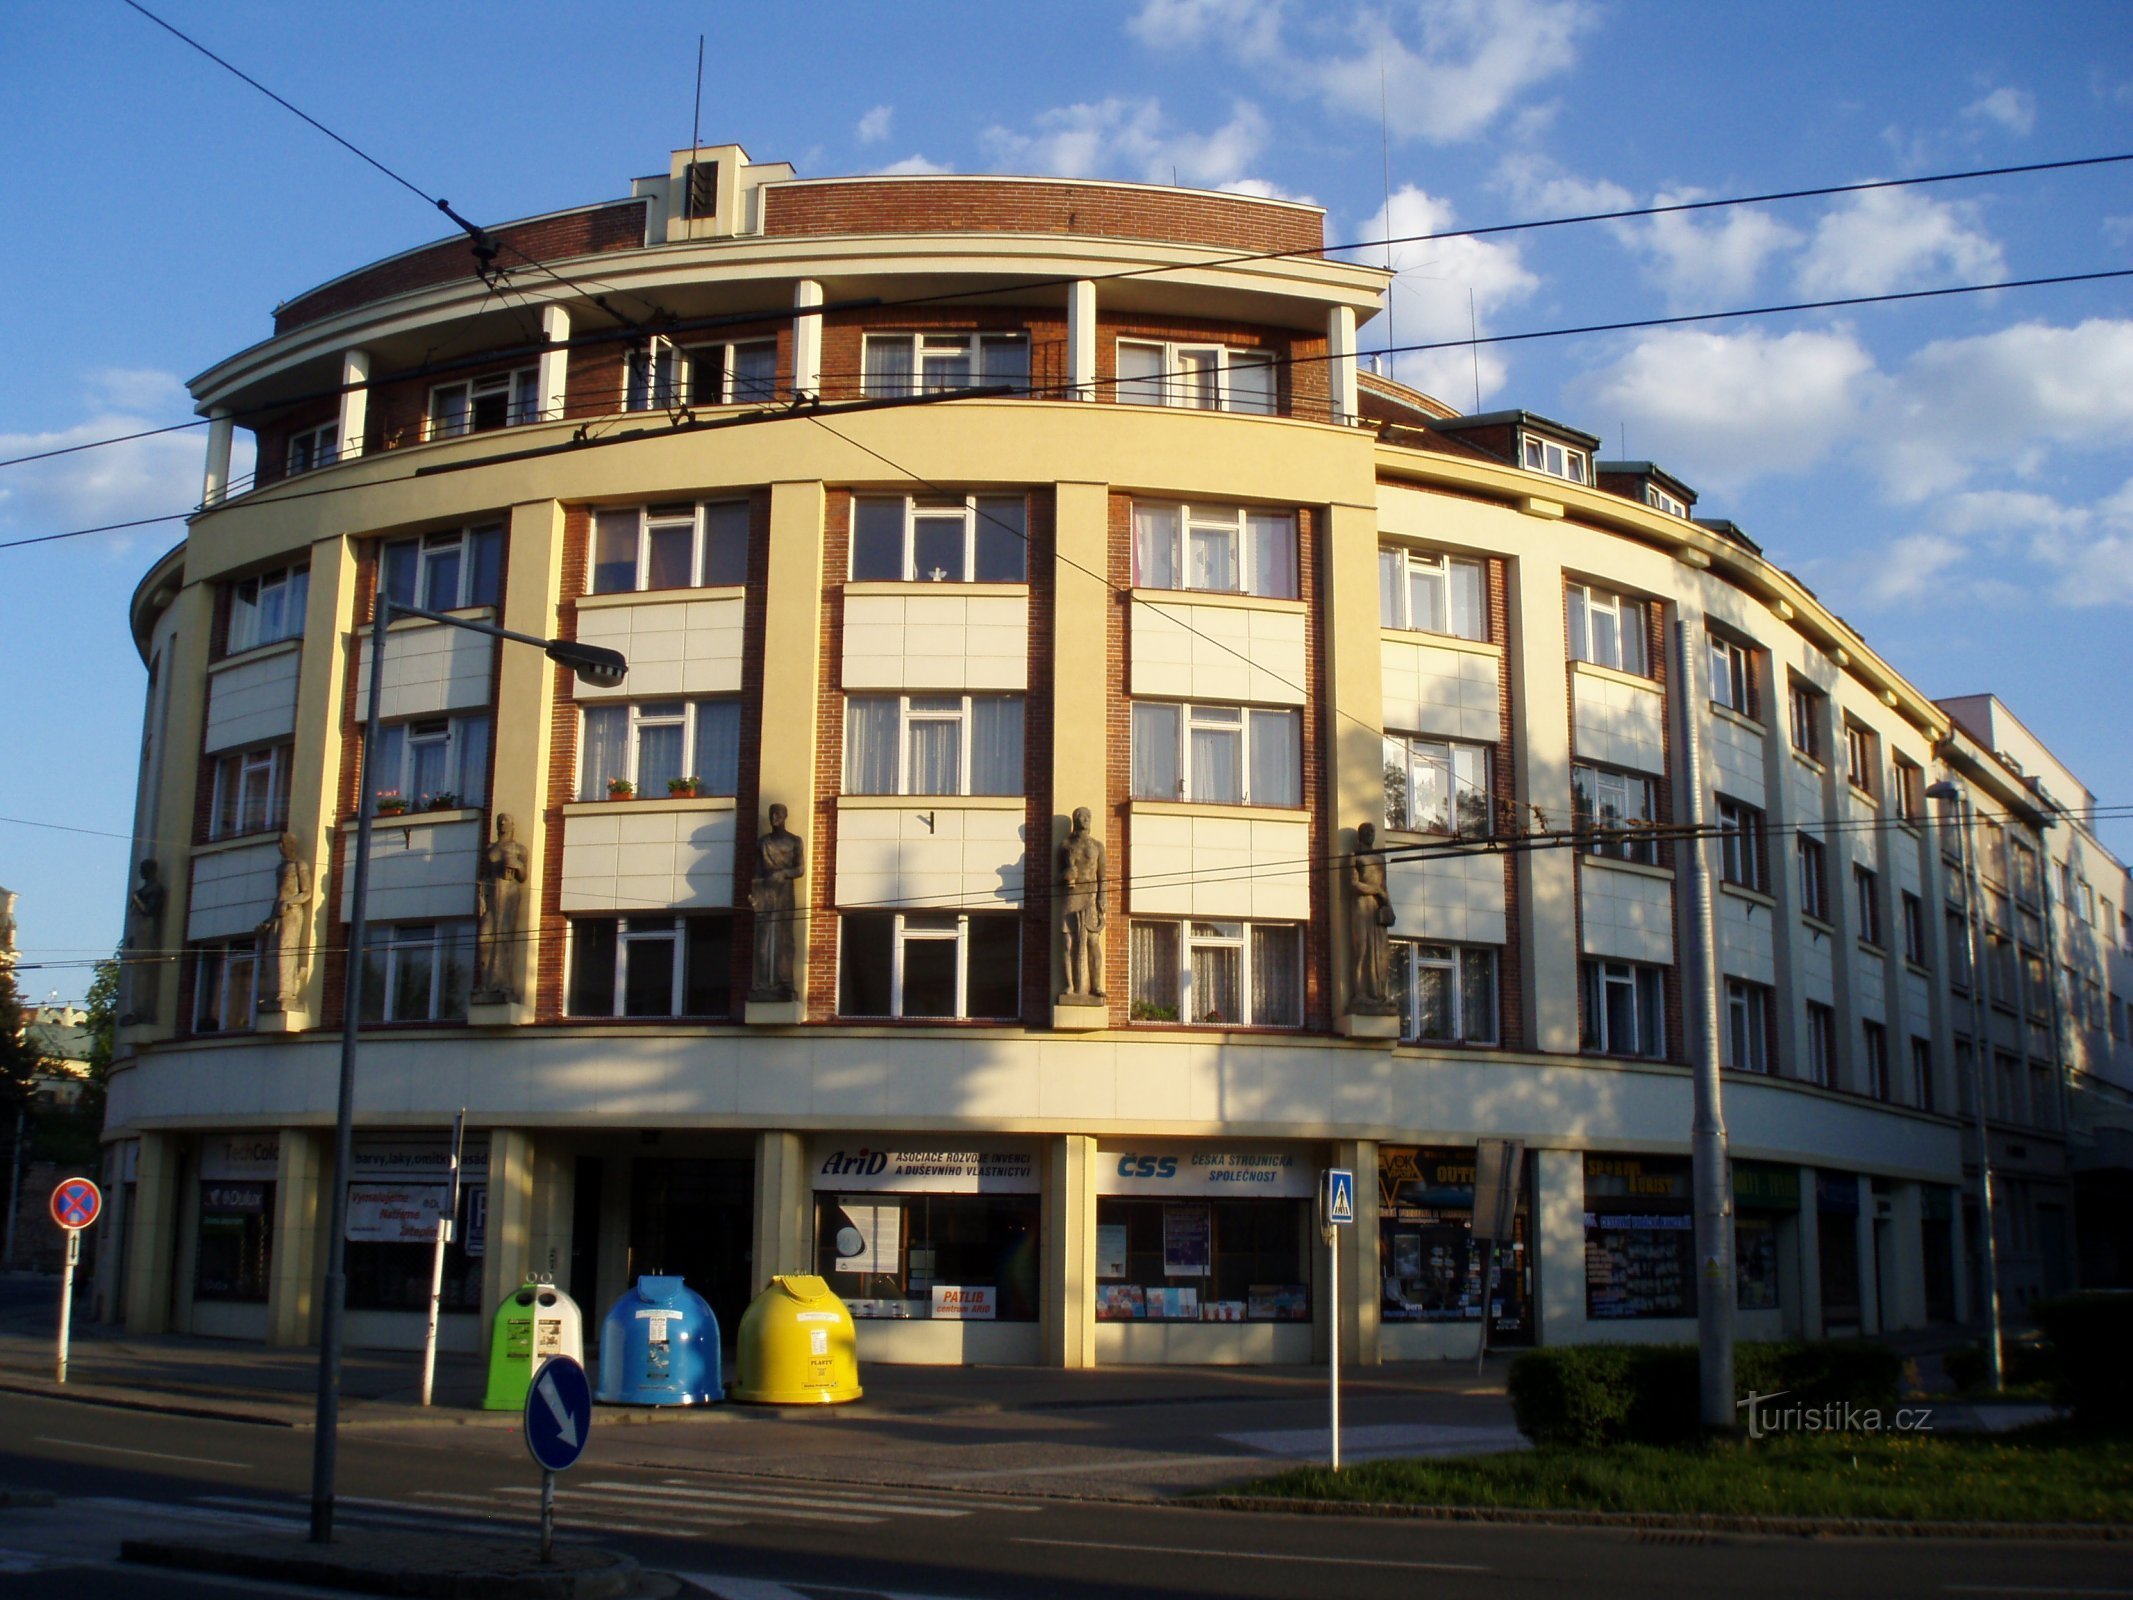 Prvo češko društvo za uzajamno osiguranje (Hradec Králové, 1.5.2012. svibnja XNUMX.)